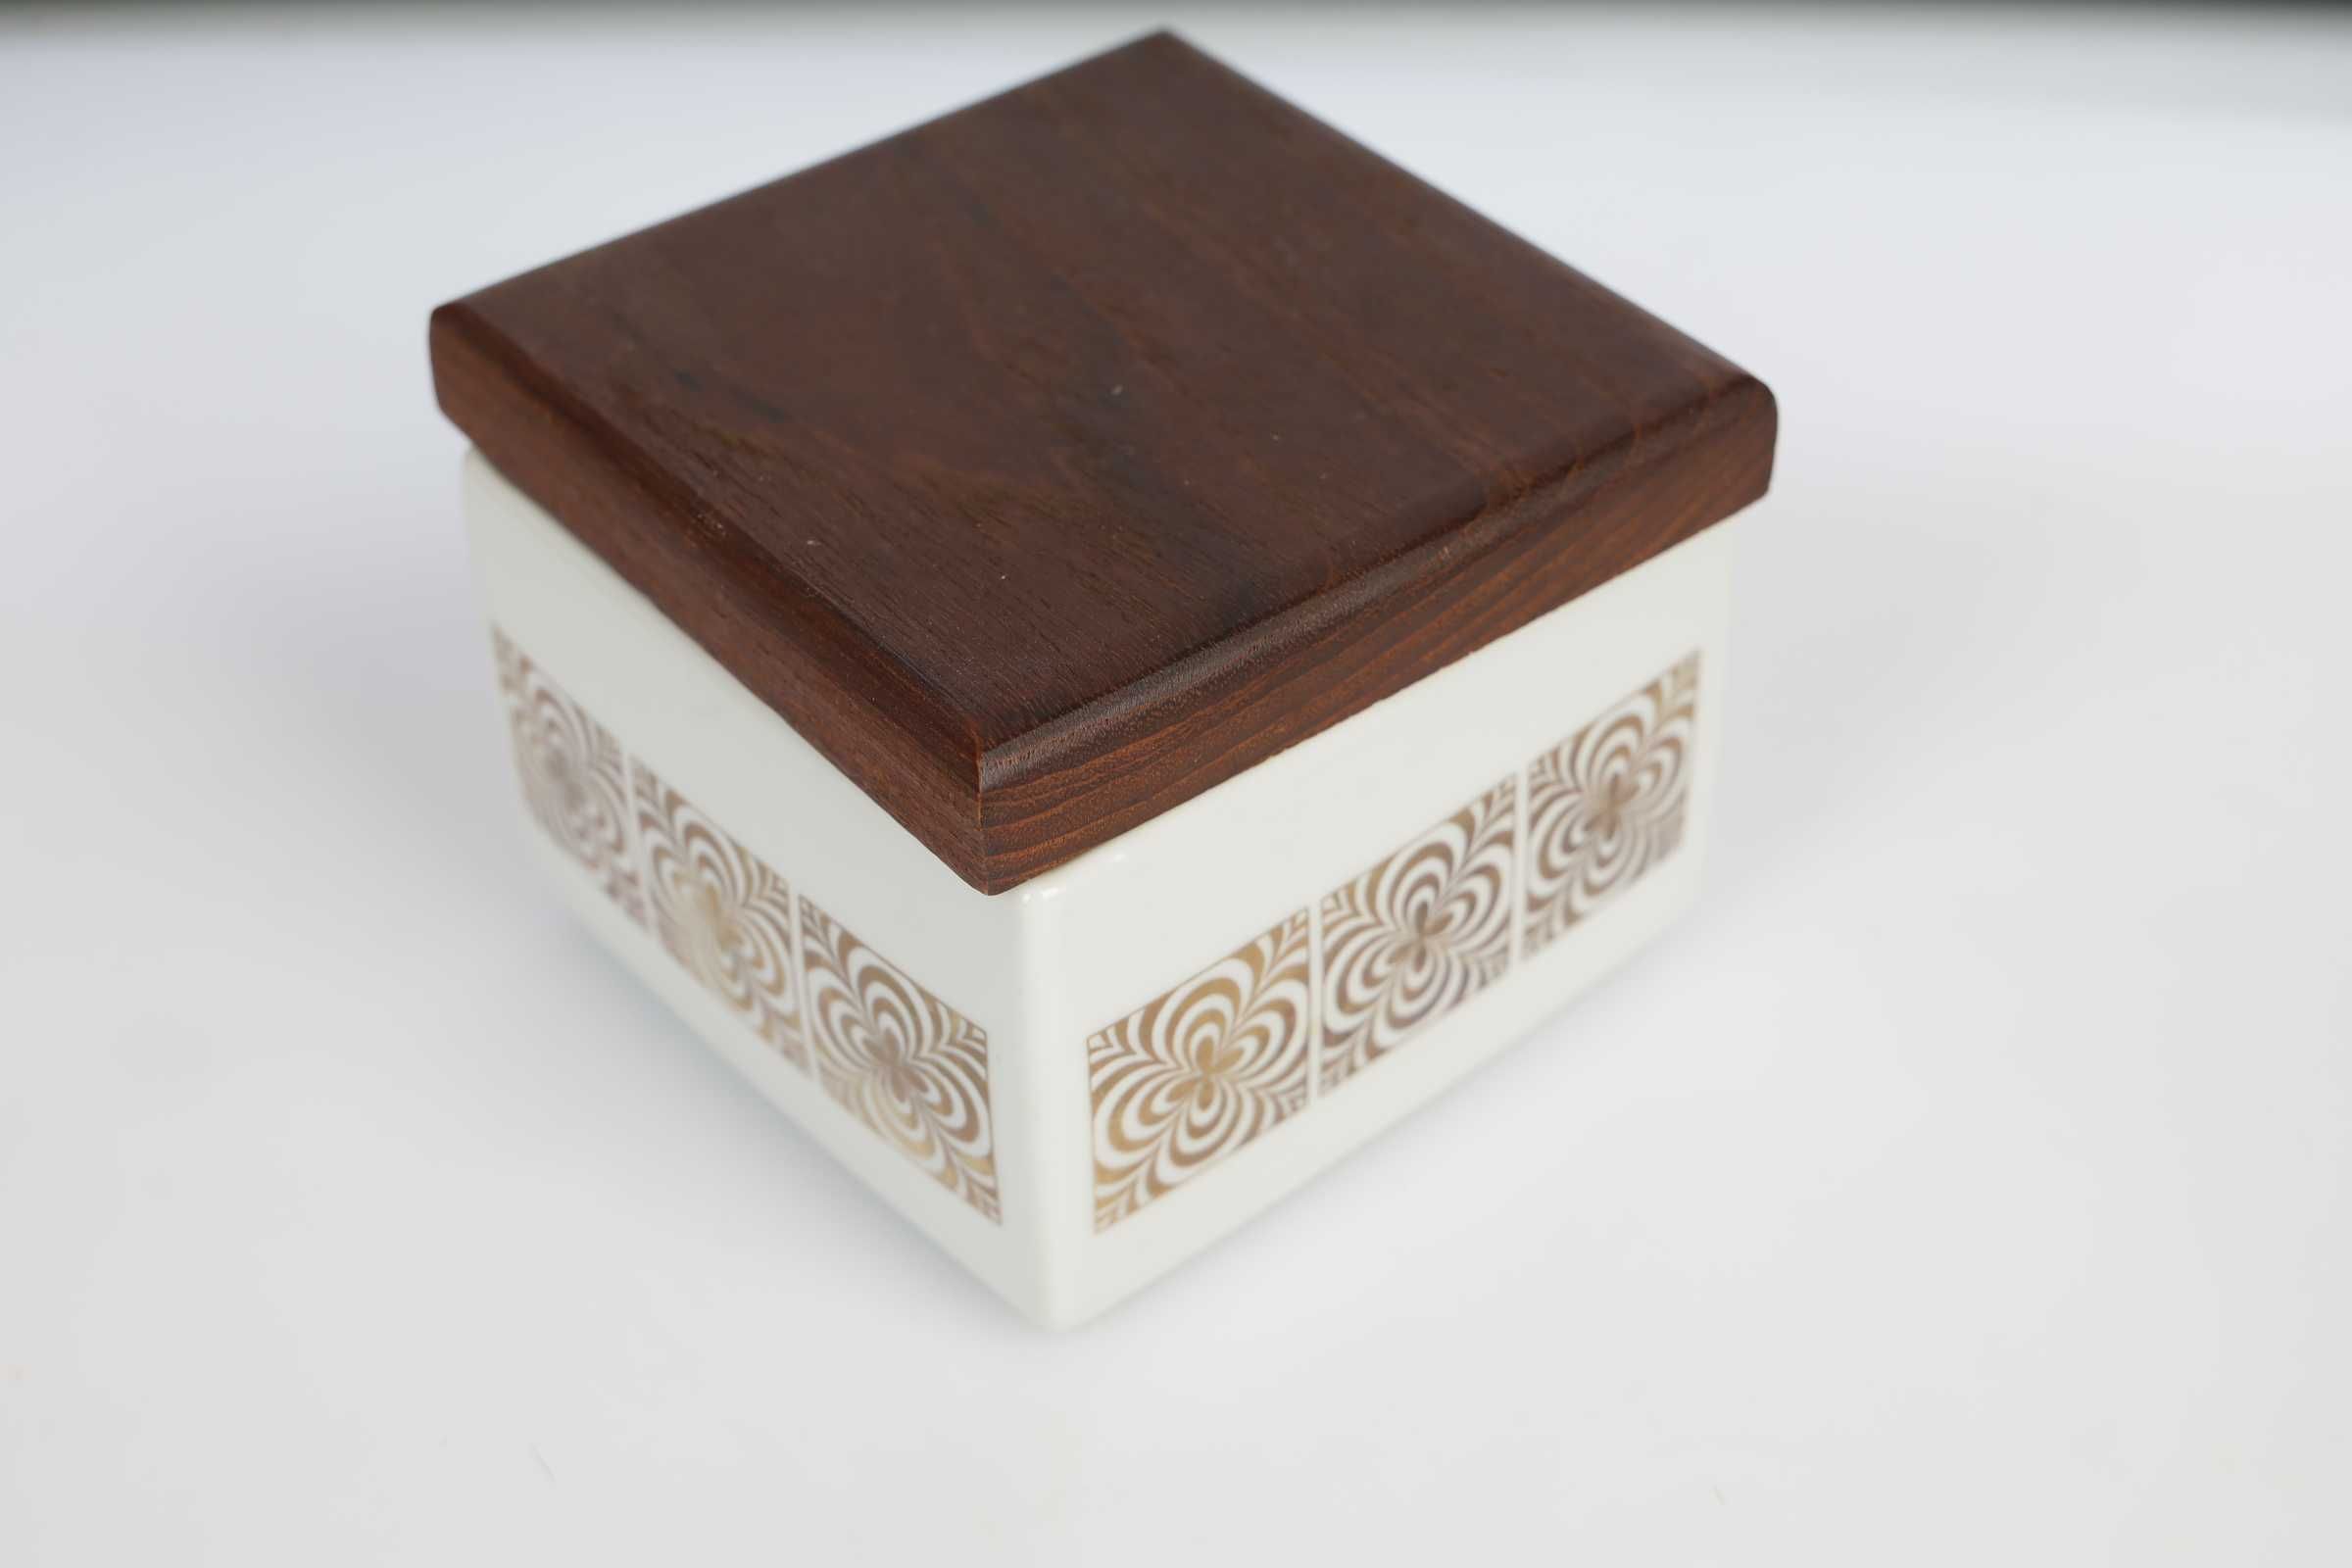 Gustowny Pojemnik Gerold Bawaria porcelana z pokrywką drewna 10x10x9cm